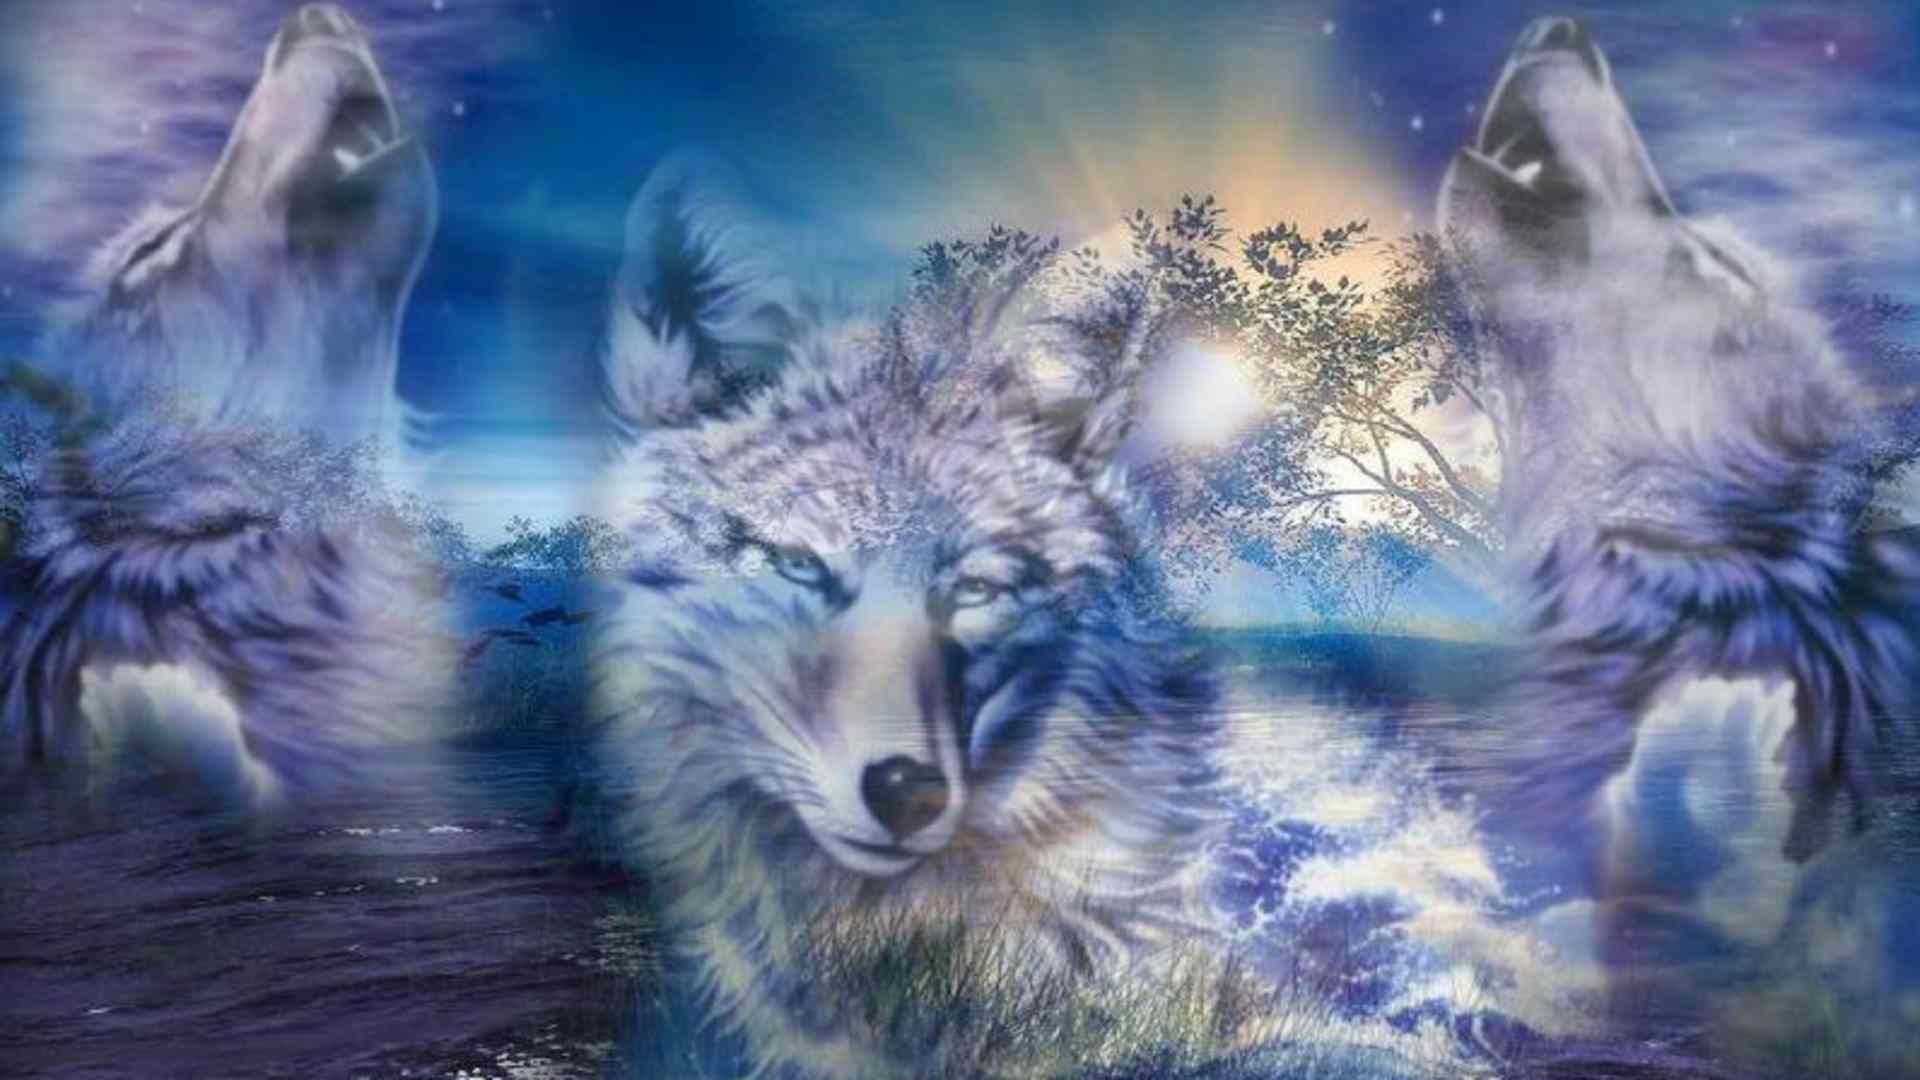 night wolfs beauty. Wolf picture, Wolf wallpaper, Wolf wall art